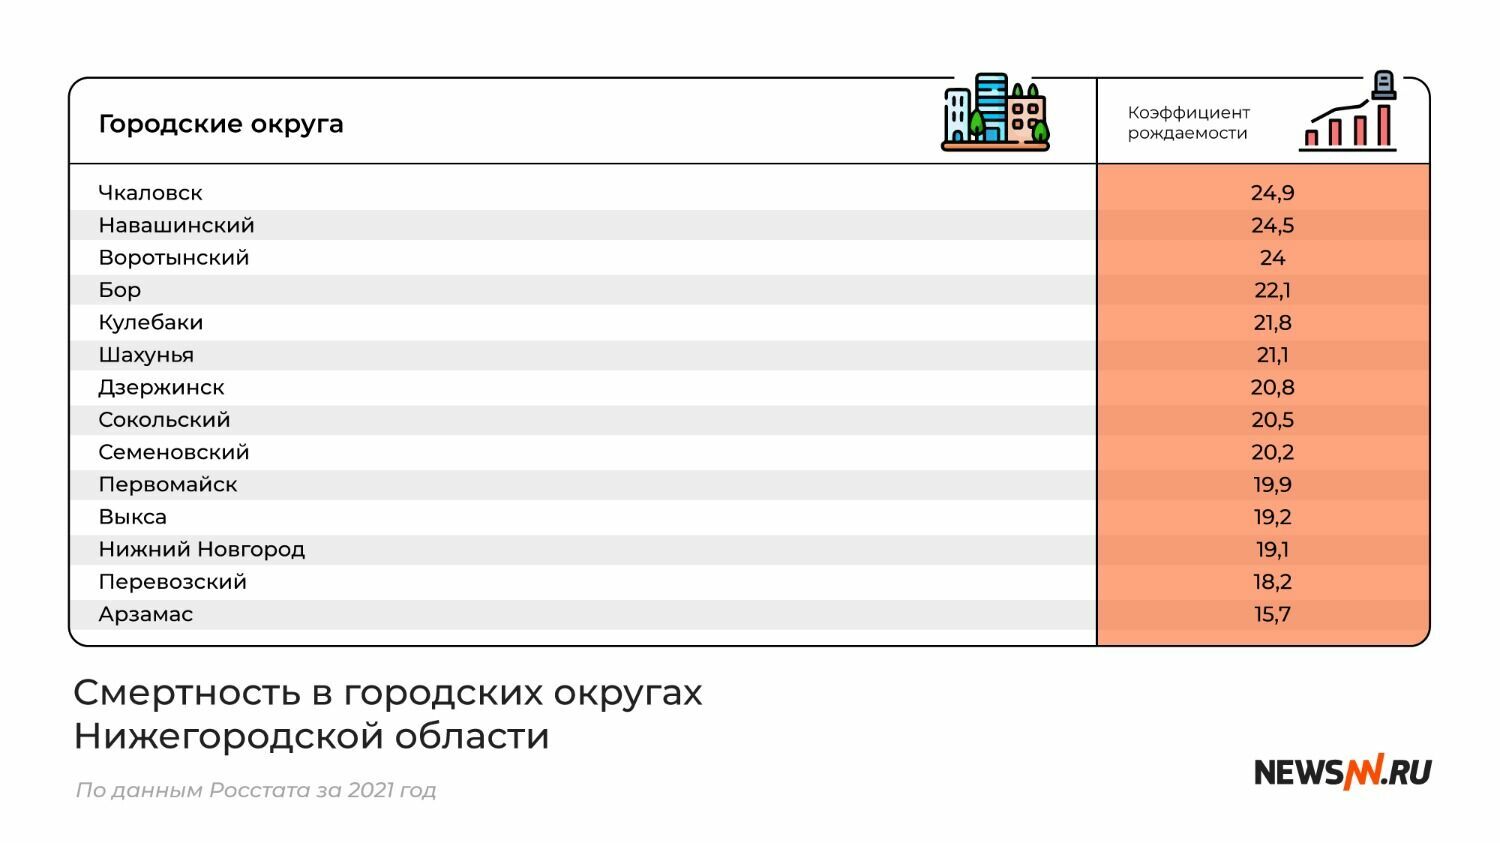 Рейтинг городских округов Нижегородской области по смертности